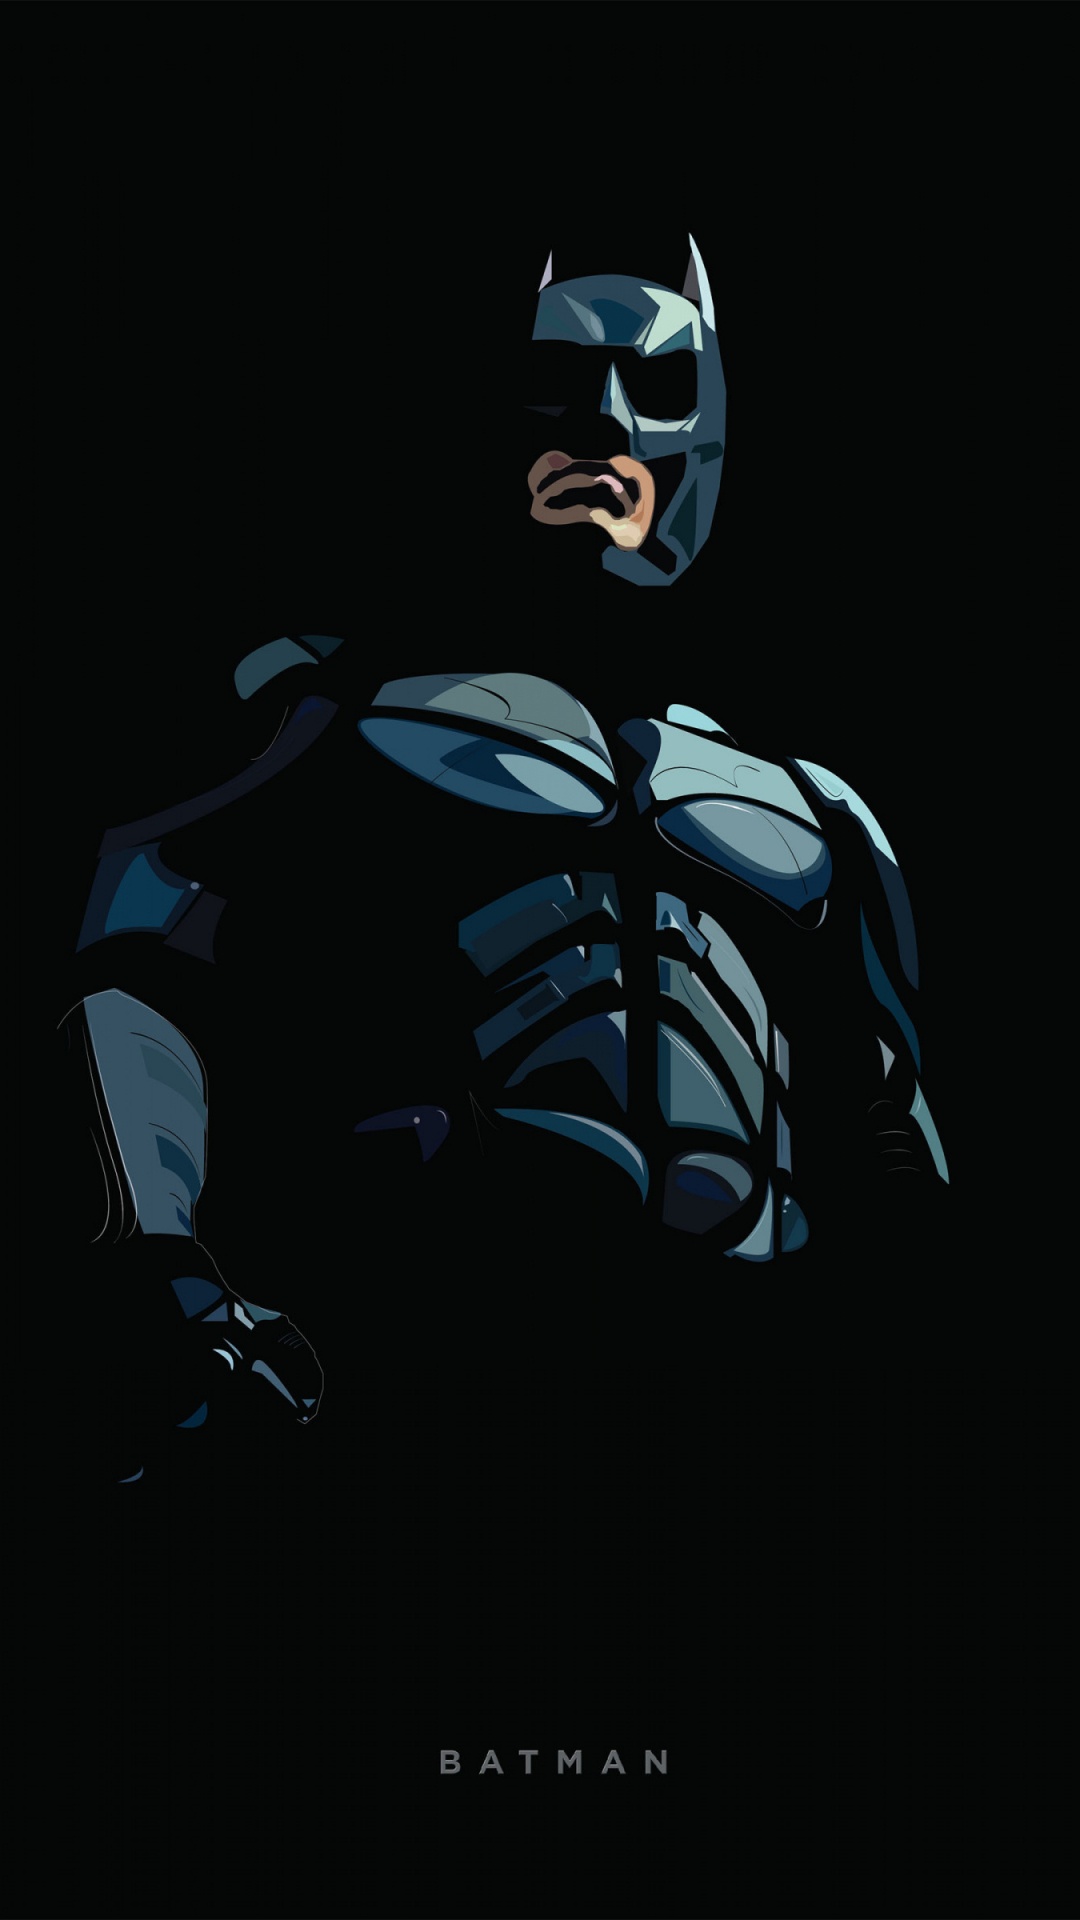 蝙蝠侠, Dc漫画, 图形设计, 画家, 虚构的人物 壁纸 1080x1920 允许